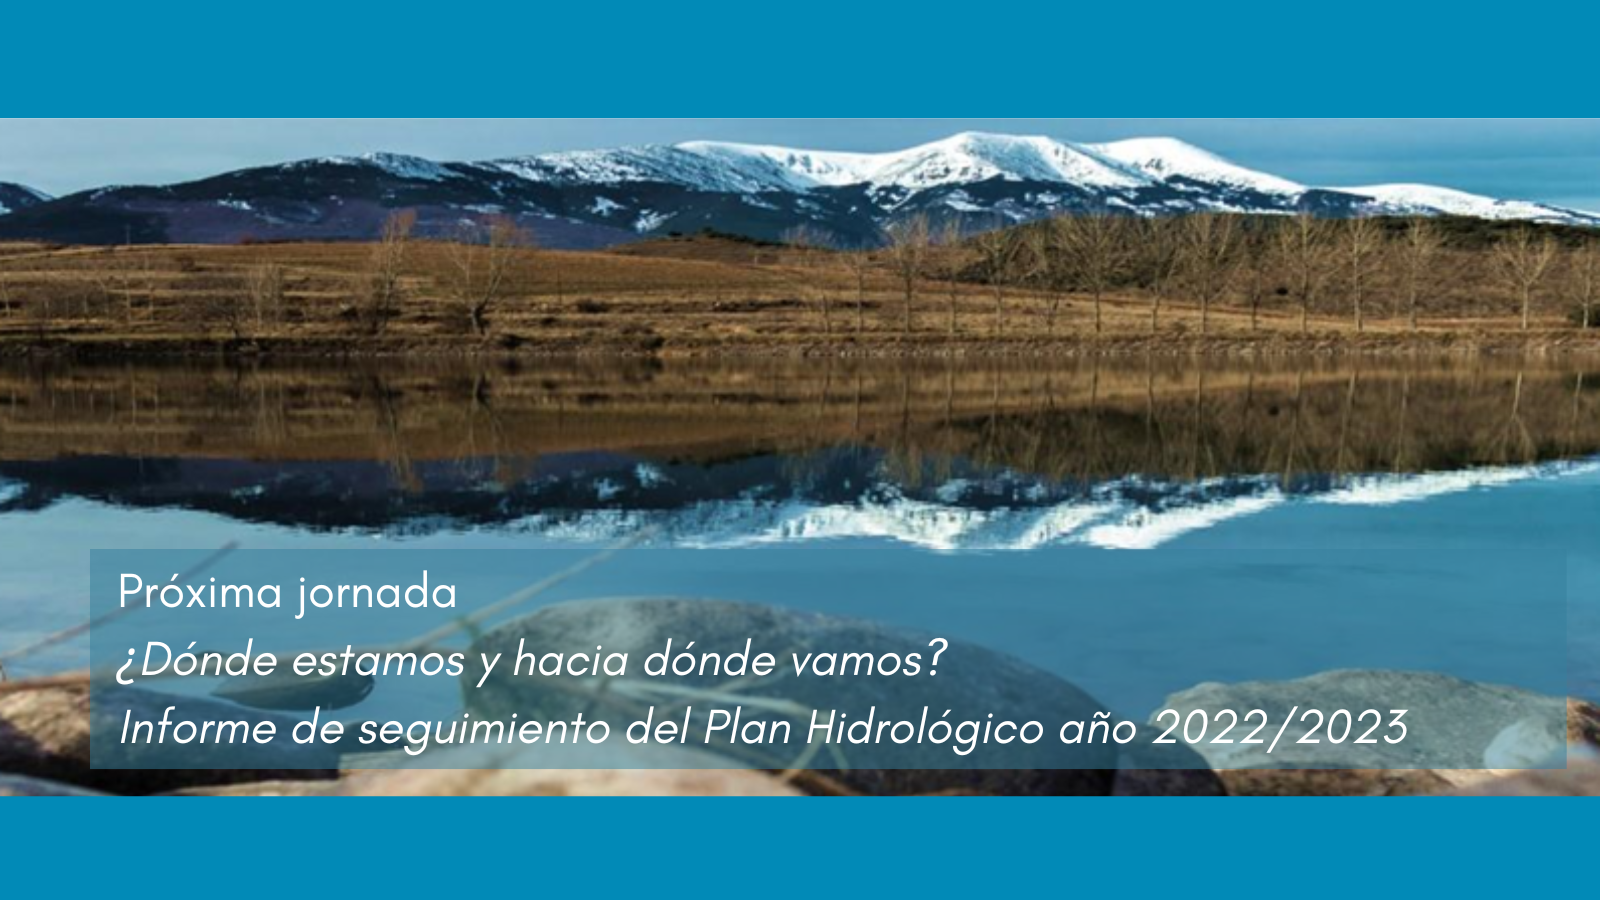 Imagen noticia - Nueva jornada: ¿Dónde estamos y hacia dónde vamos? El informe de seguimiento del plan hidrológico en el año 2022/2023